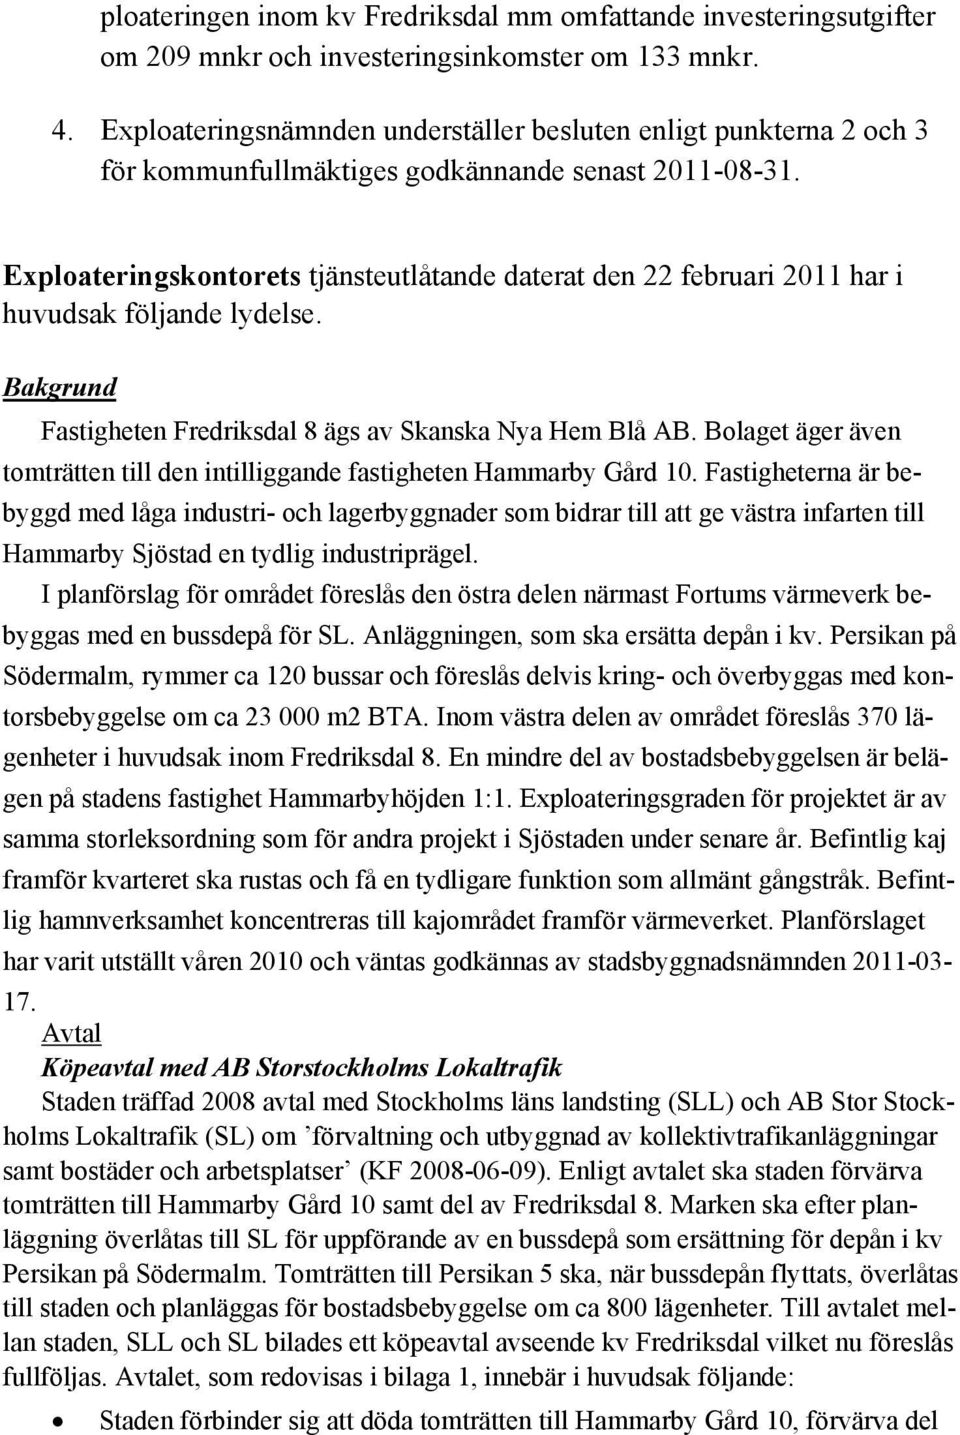 Exploateringskontorets tjänsteutlåtande daterat den 22 februari 2011 har i huvudsak följande lydelse. Bakgrund Fastigheten Fredriksdal 8 ägs av Skanska Nya Hem Blå AB.